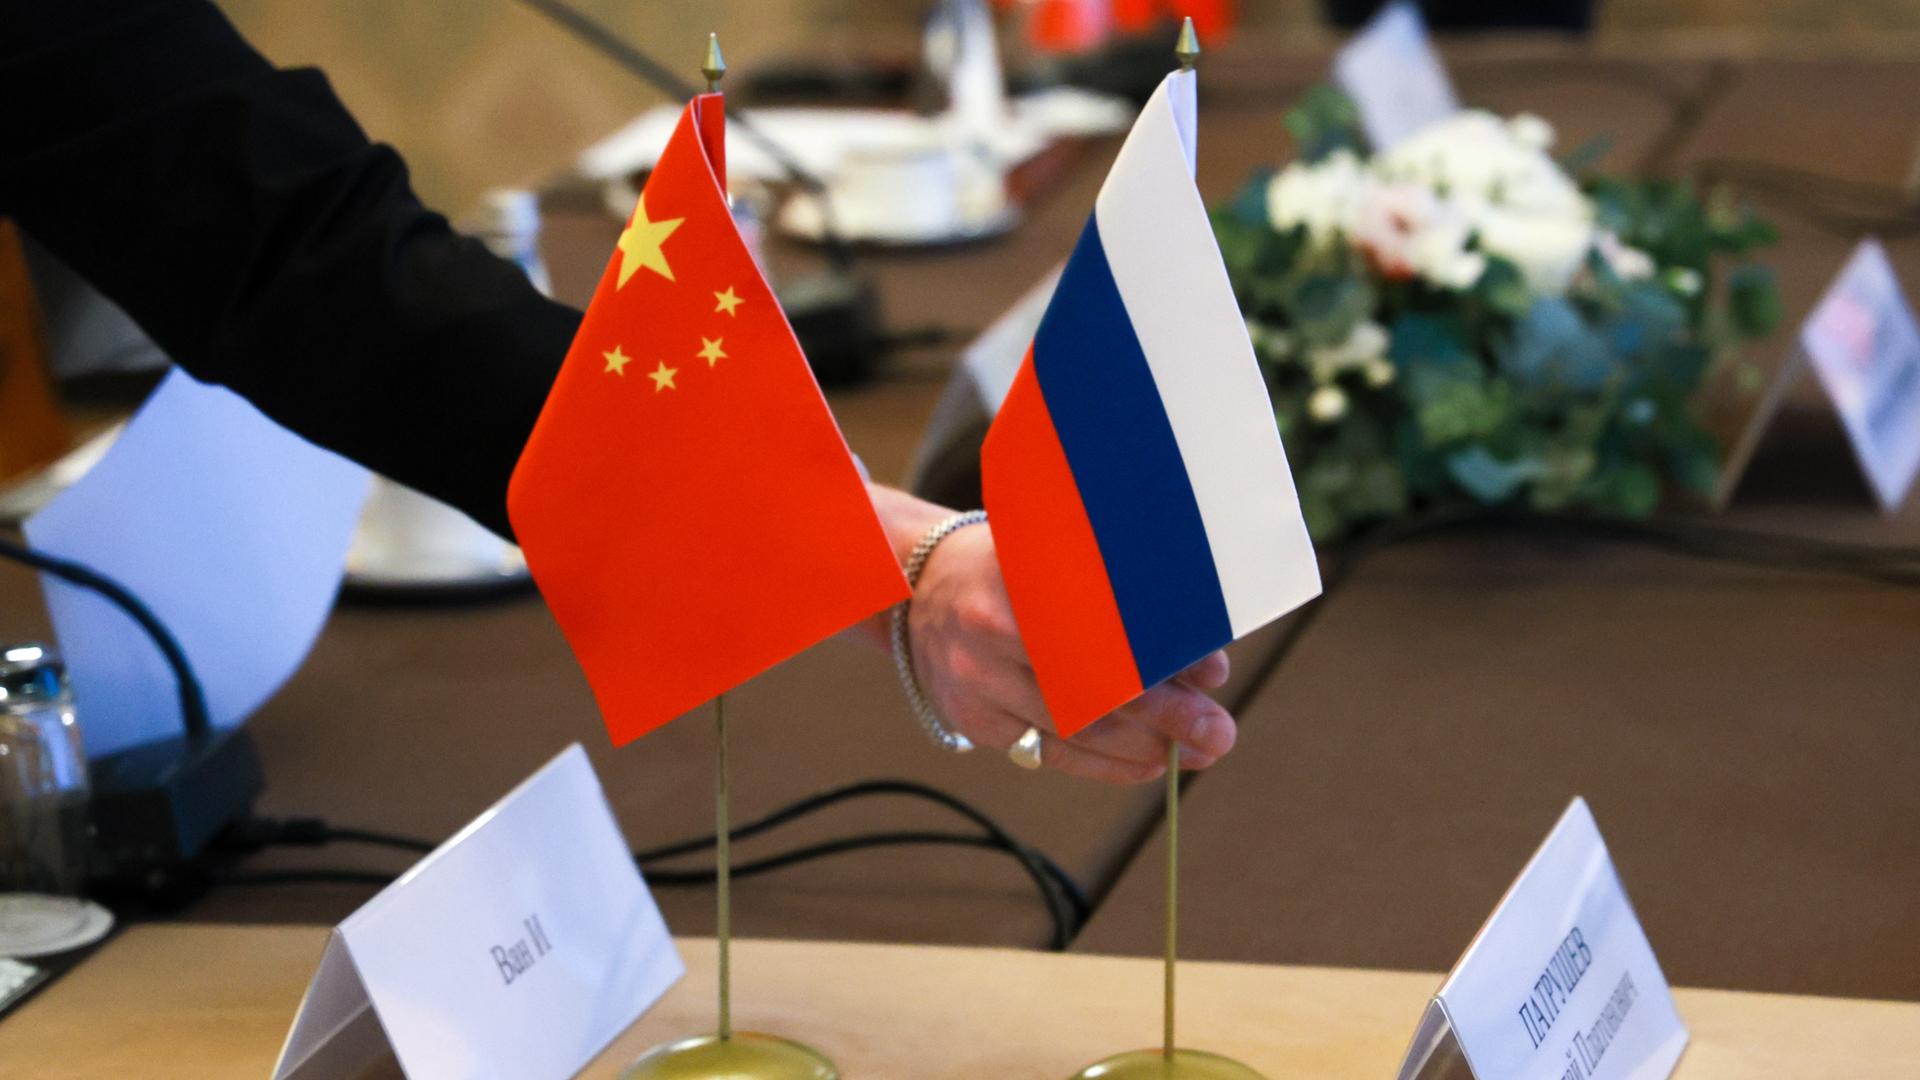 Militärische Zusammenarbeit - Russland will Kooperation mit China ausbauen